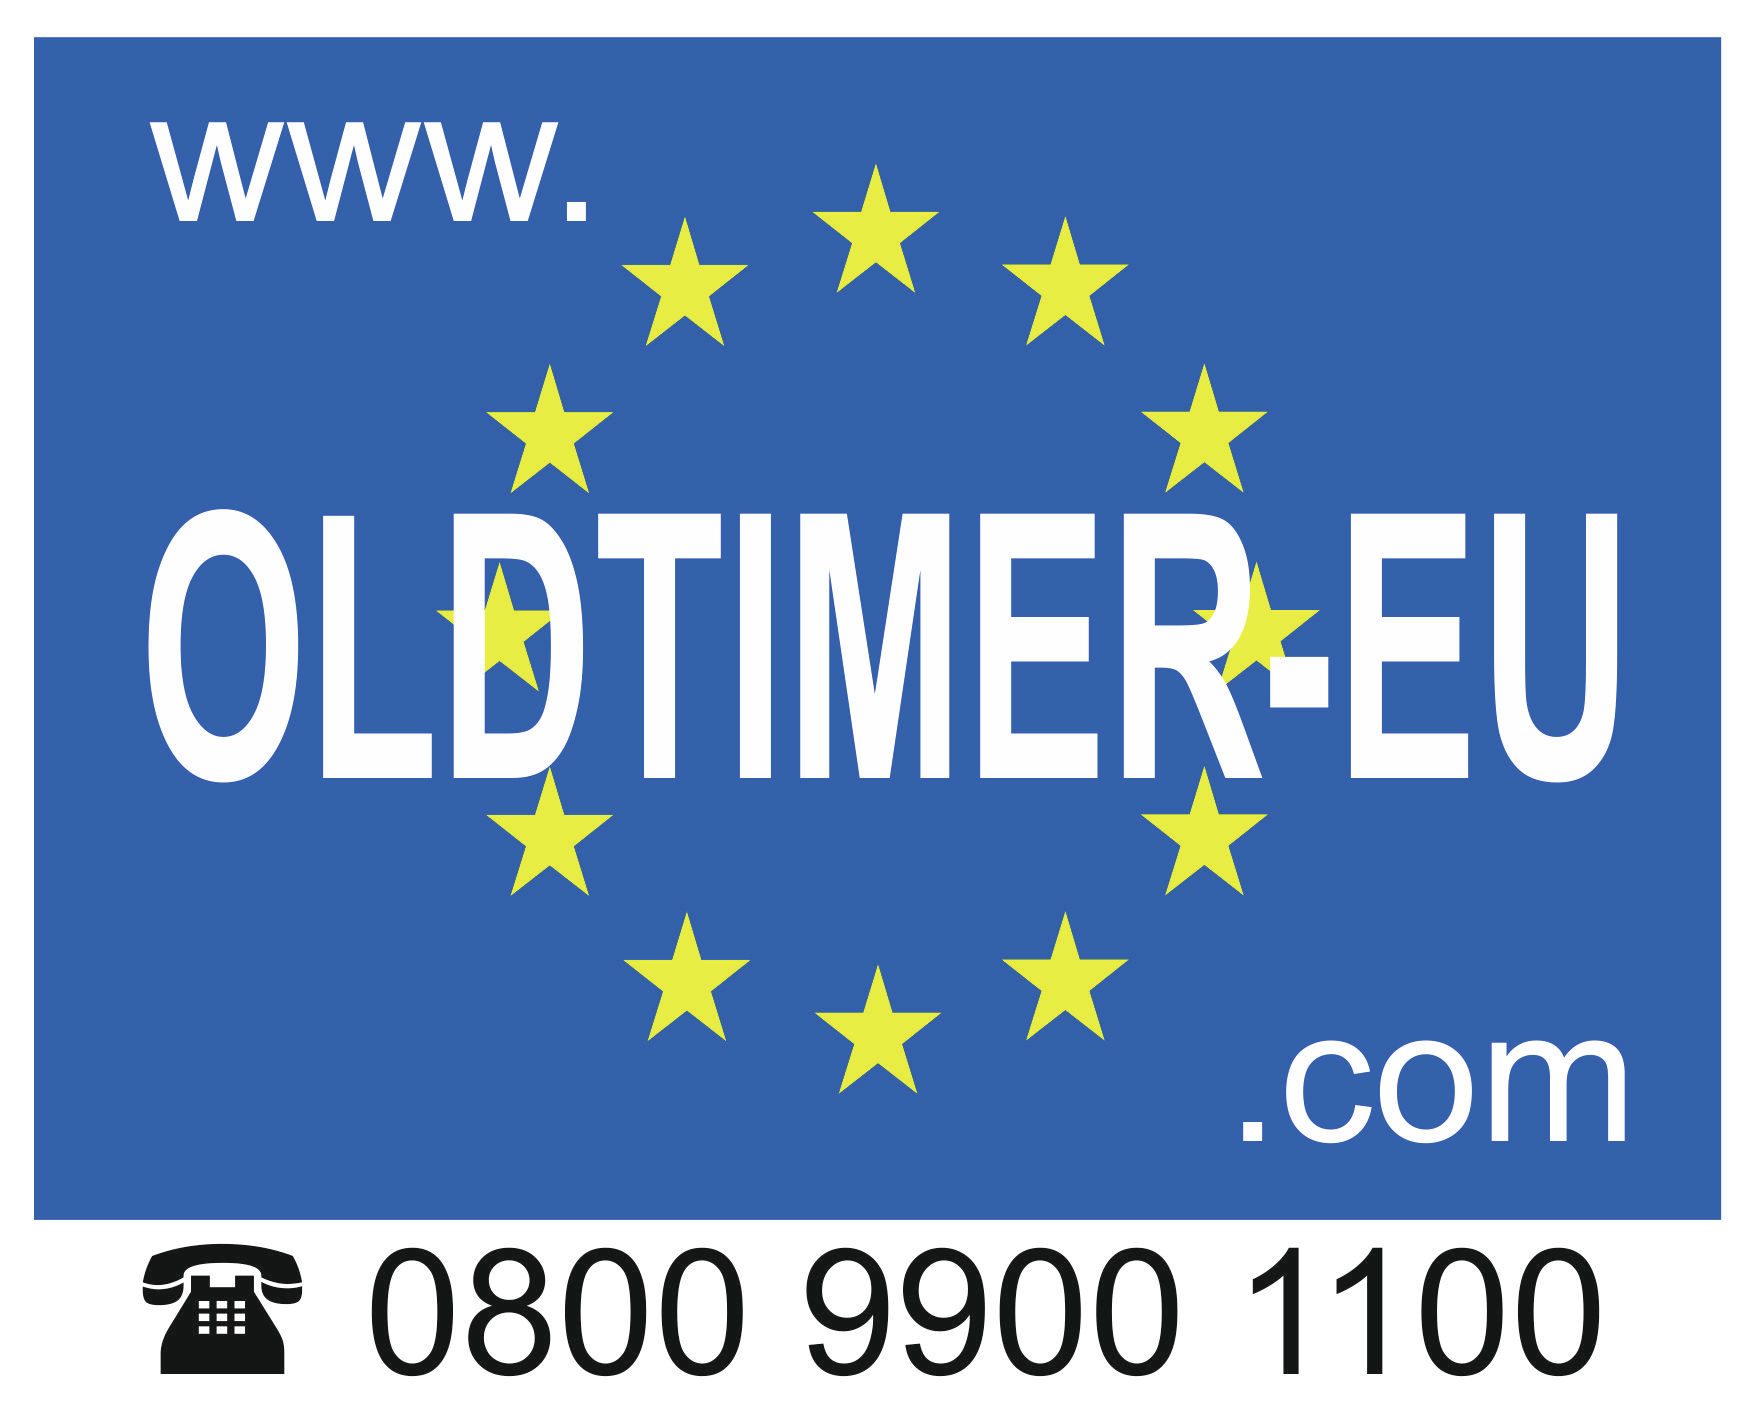 (c) Oldtimer-eu.com